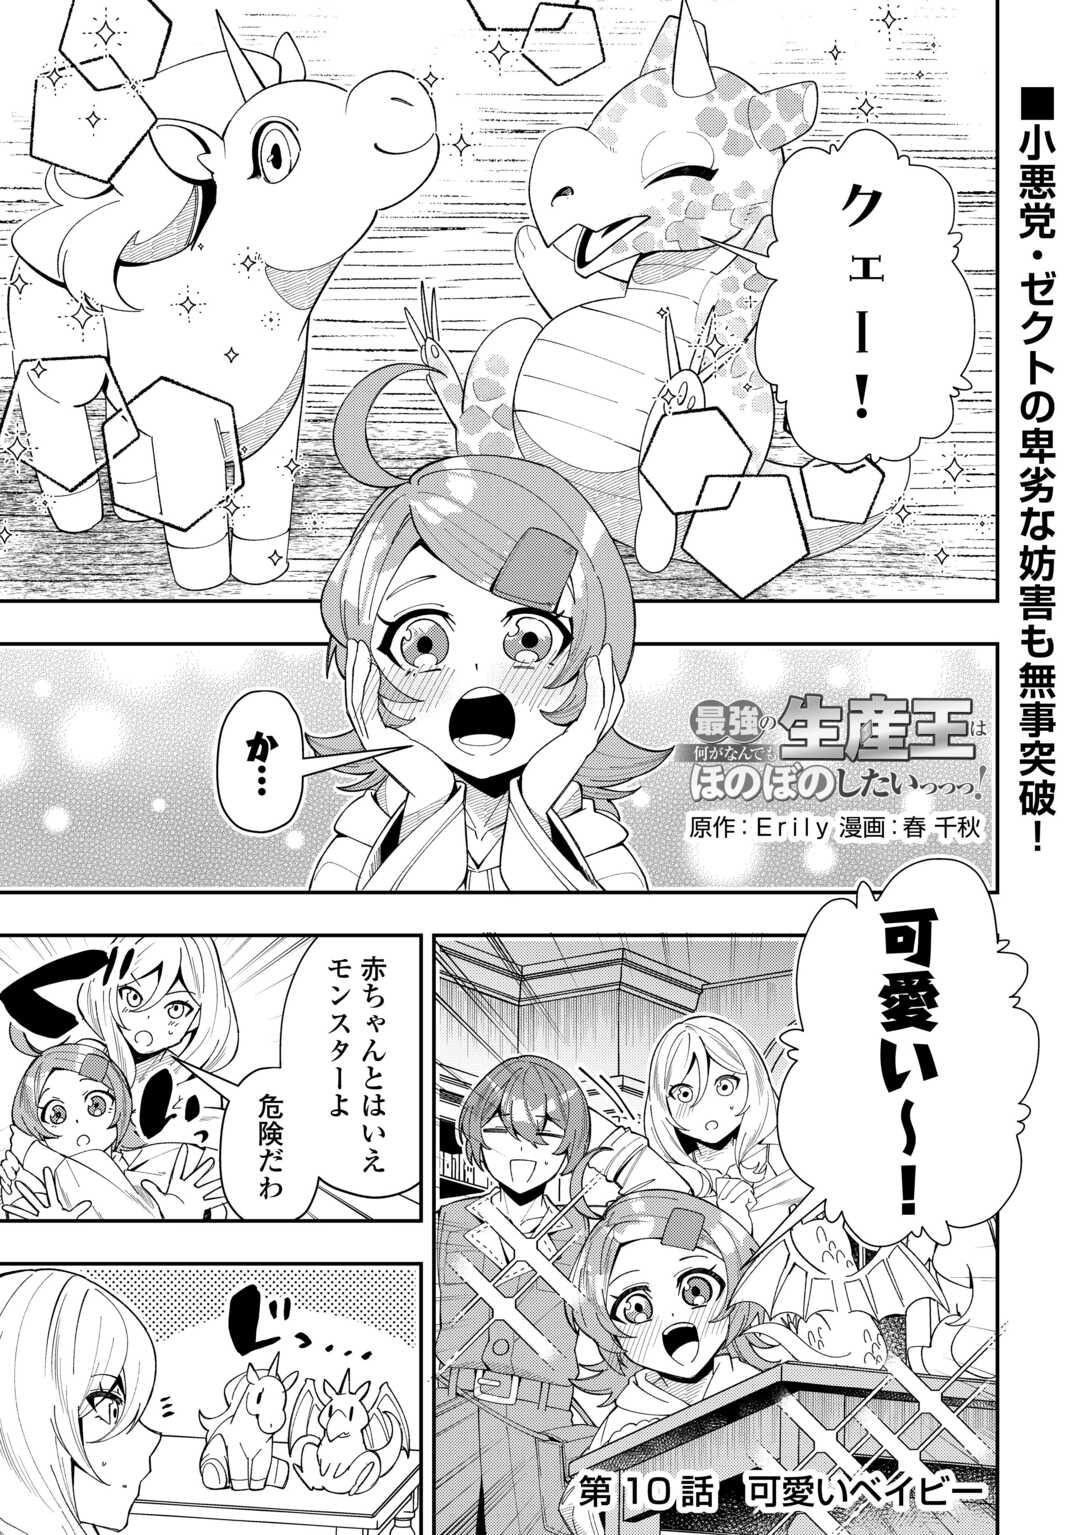 Saikyou no Seisan Ou wa Nani ga Nandemo Honobono Shitaiiii! - Chapter 10 - Page 1